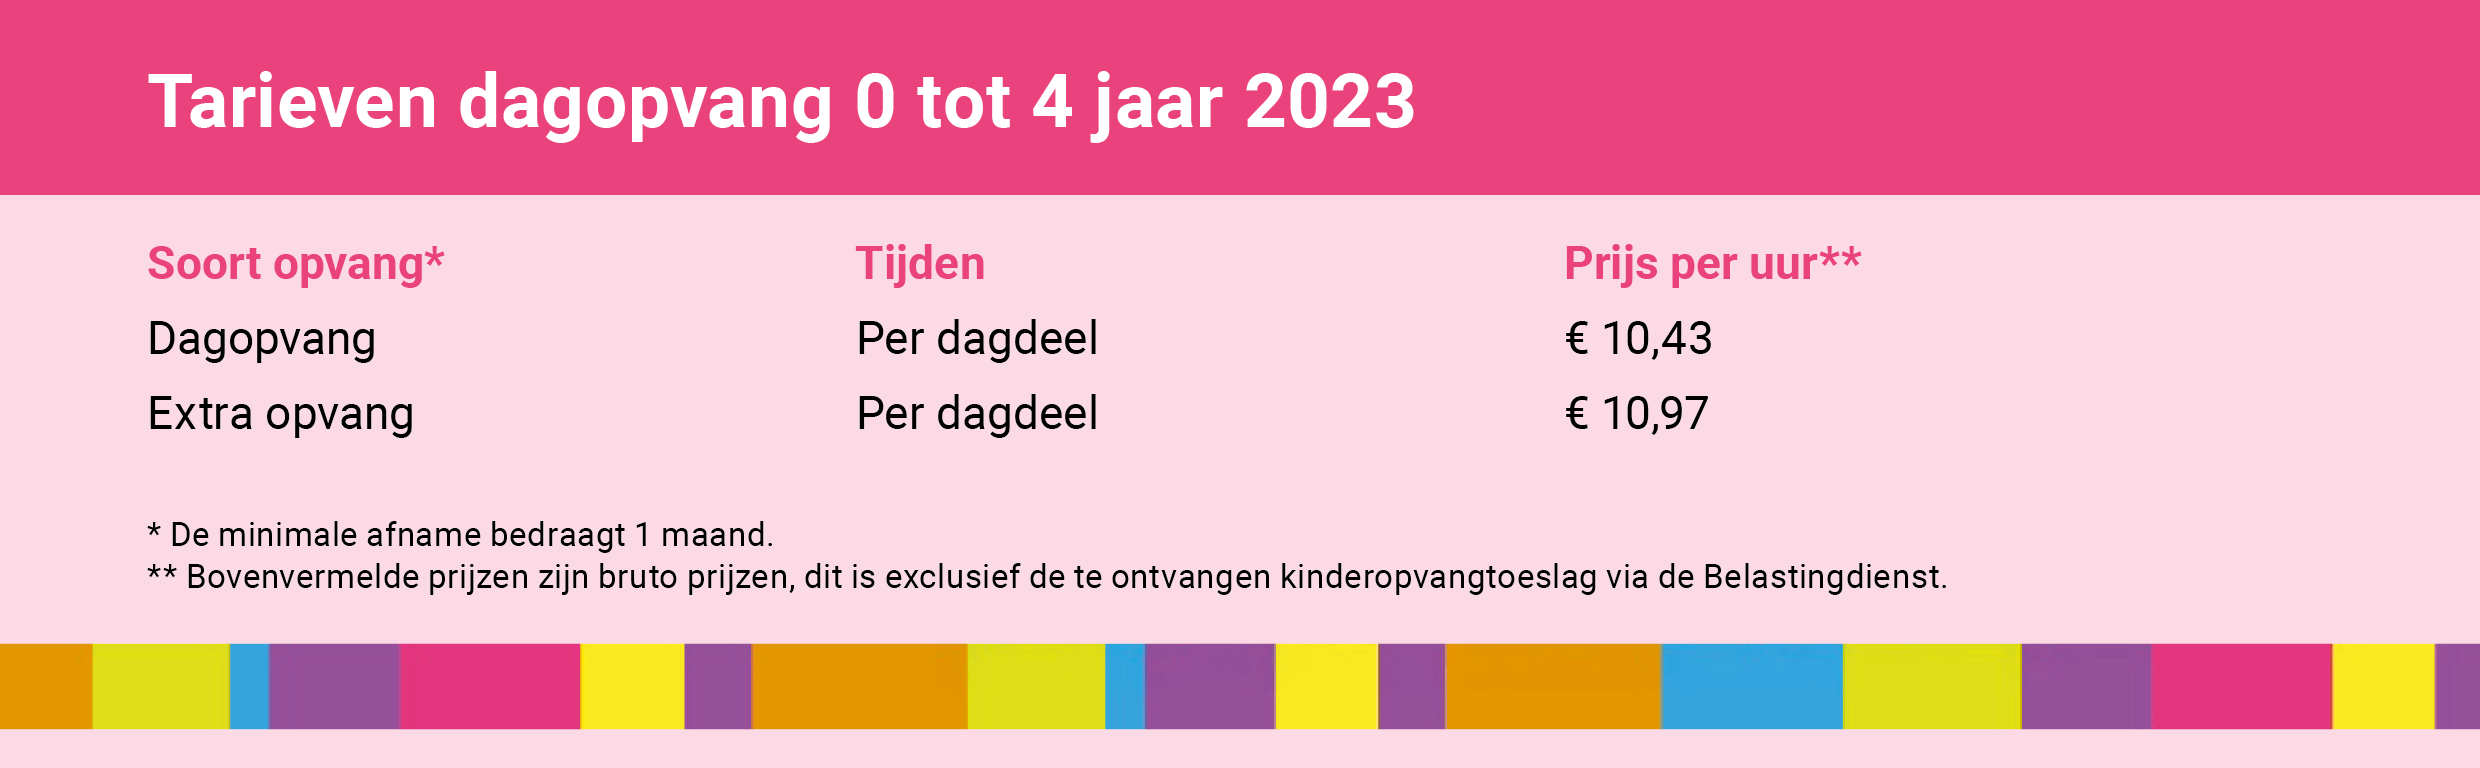 tarieven_dagopvang-0-4-jaar-2023